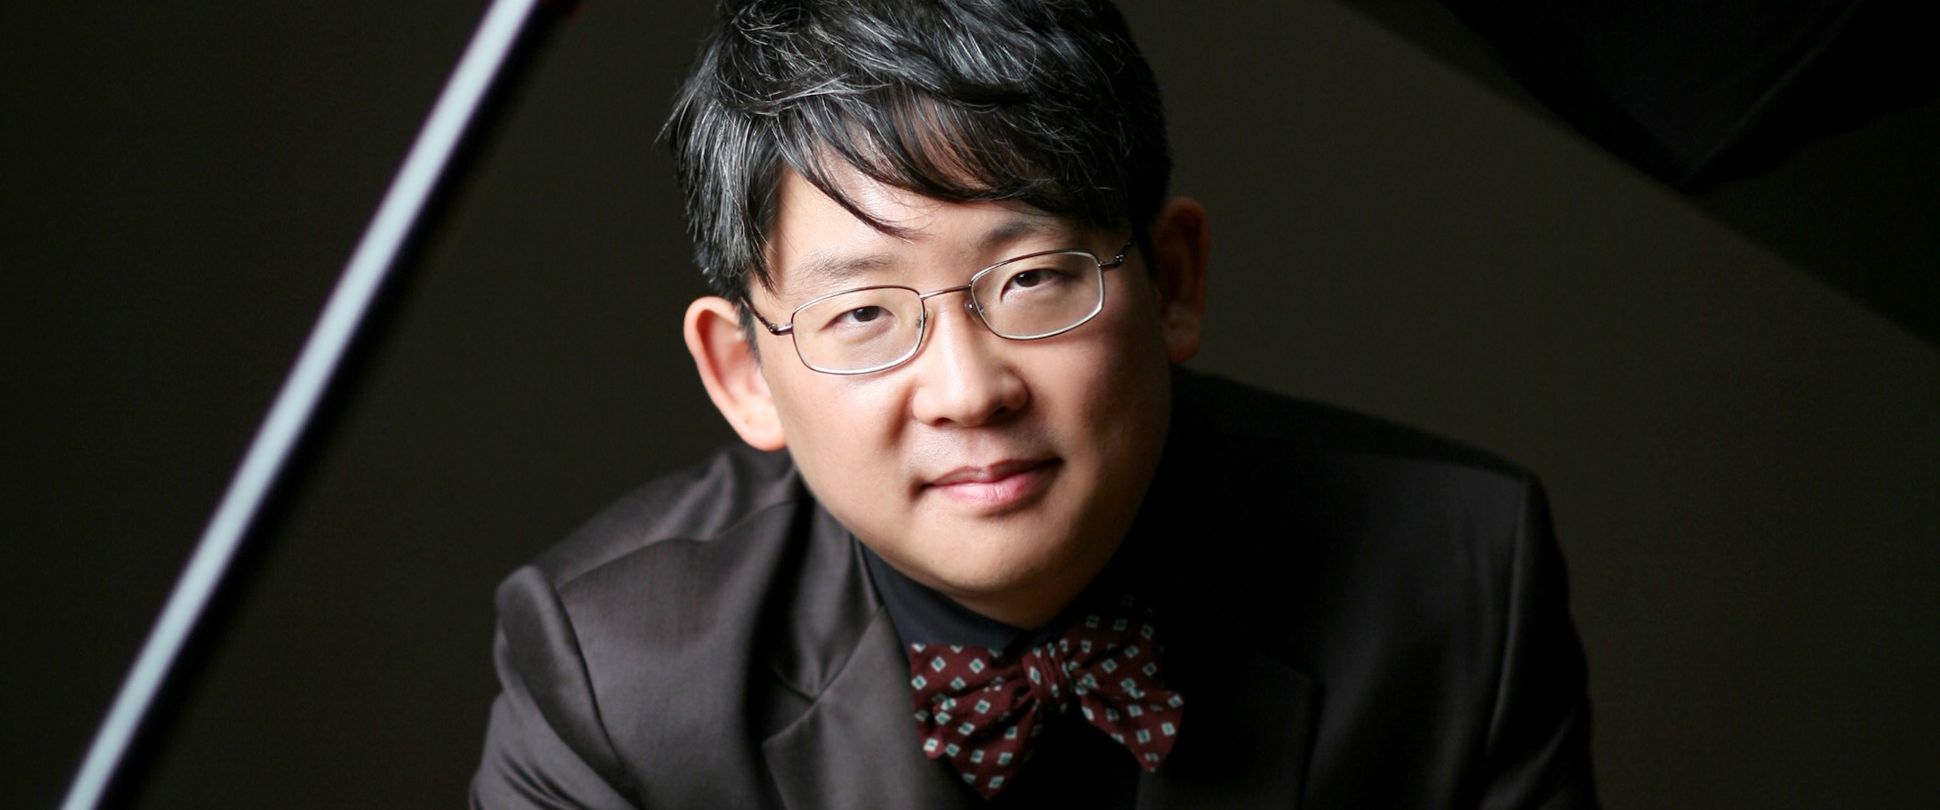 Asiatischer Mann am Klavier